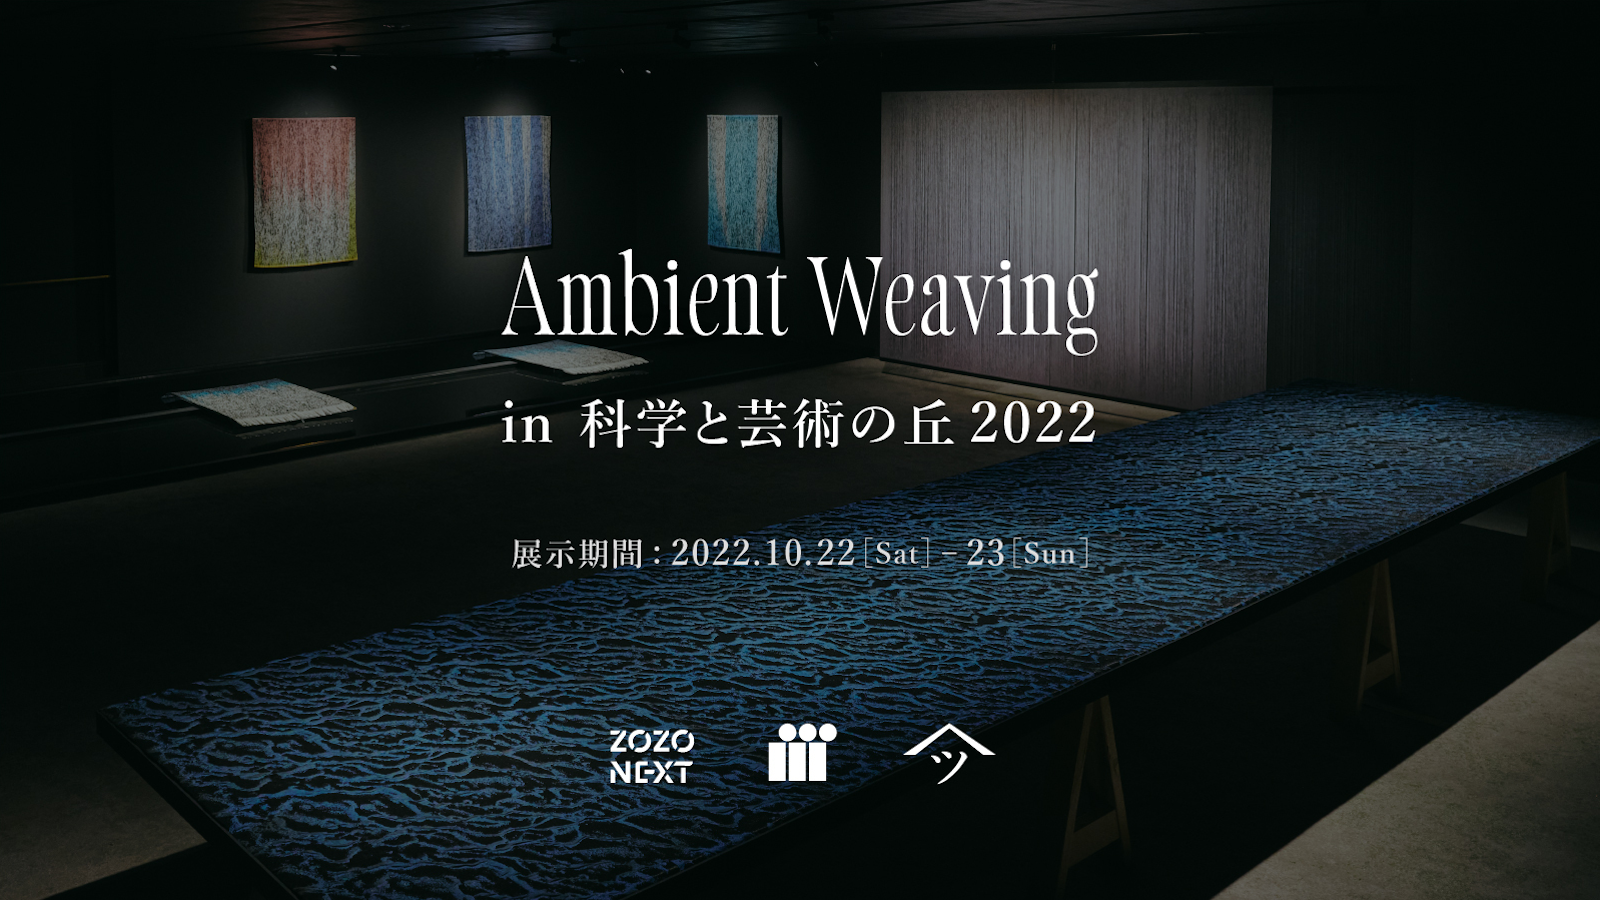 ZOZOグループのスマートテキスタイル「Ambient Weaving」が 国際フェスティバル「科学と芸術の丘 2022」で関東初展示！